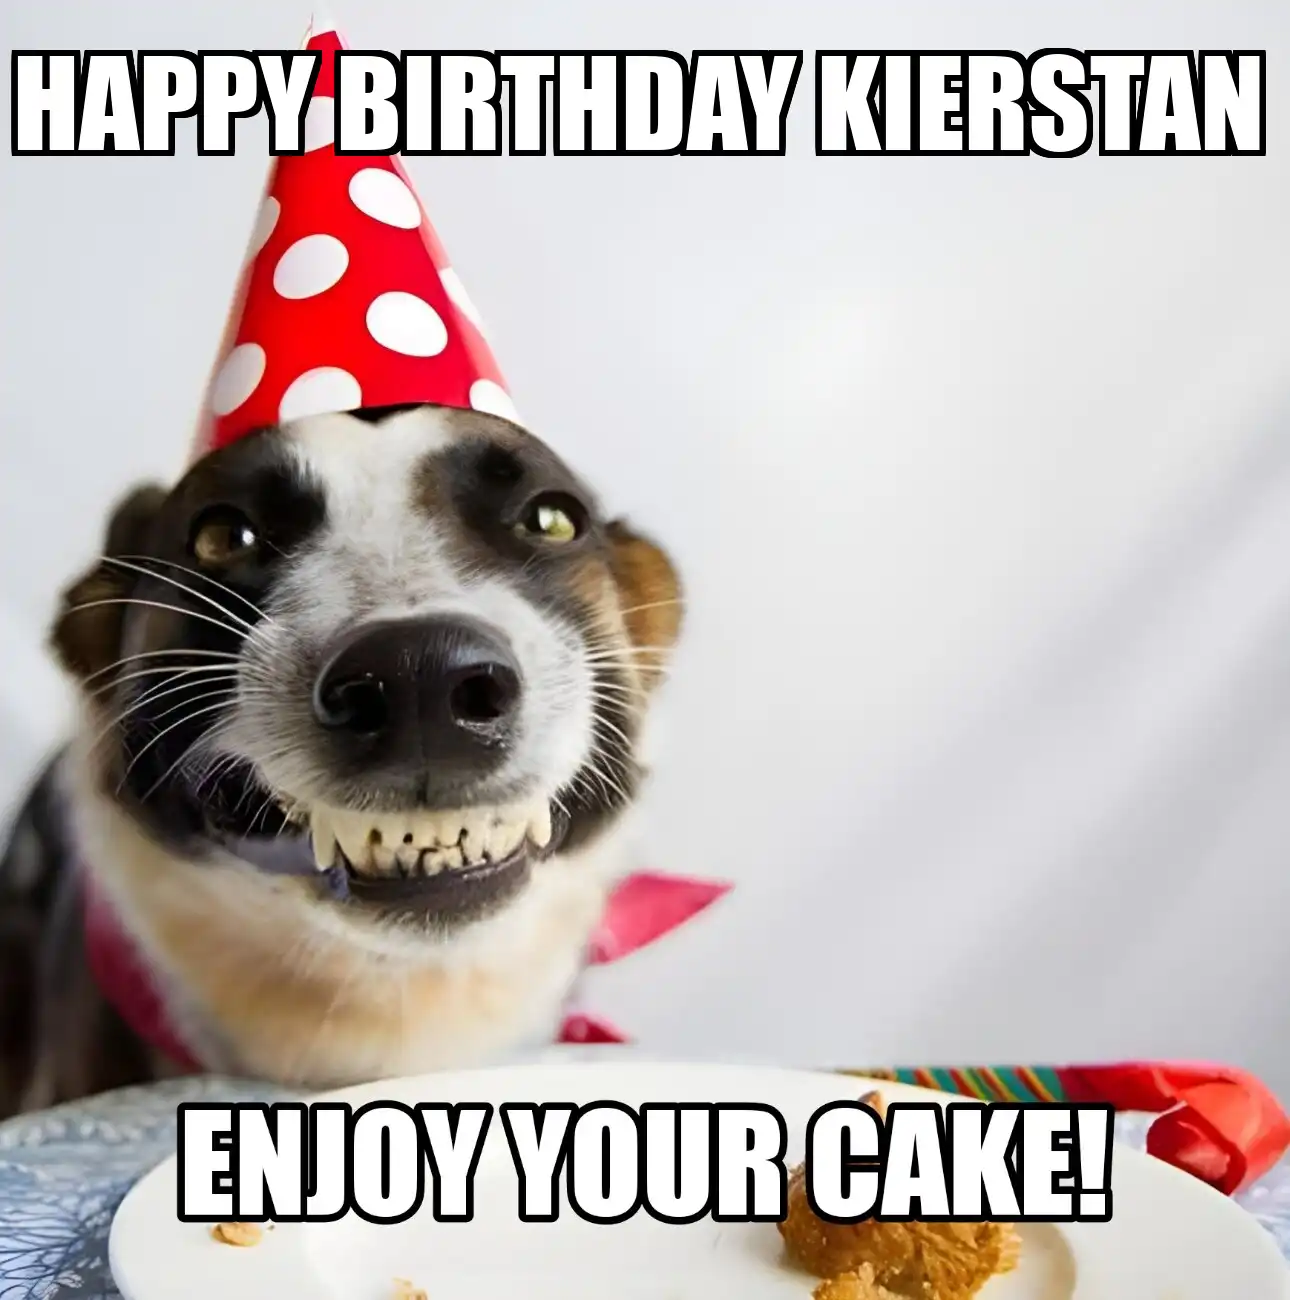 Happy Birthday Kierstan Enjoy Your Cake Dog Meme